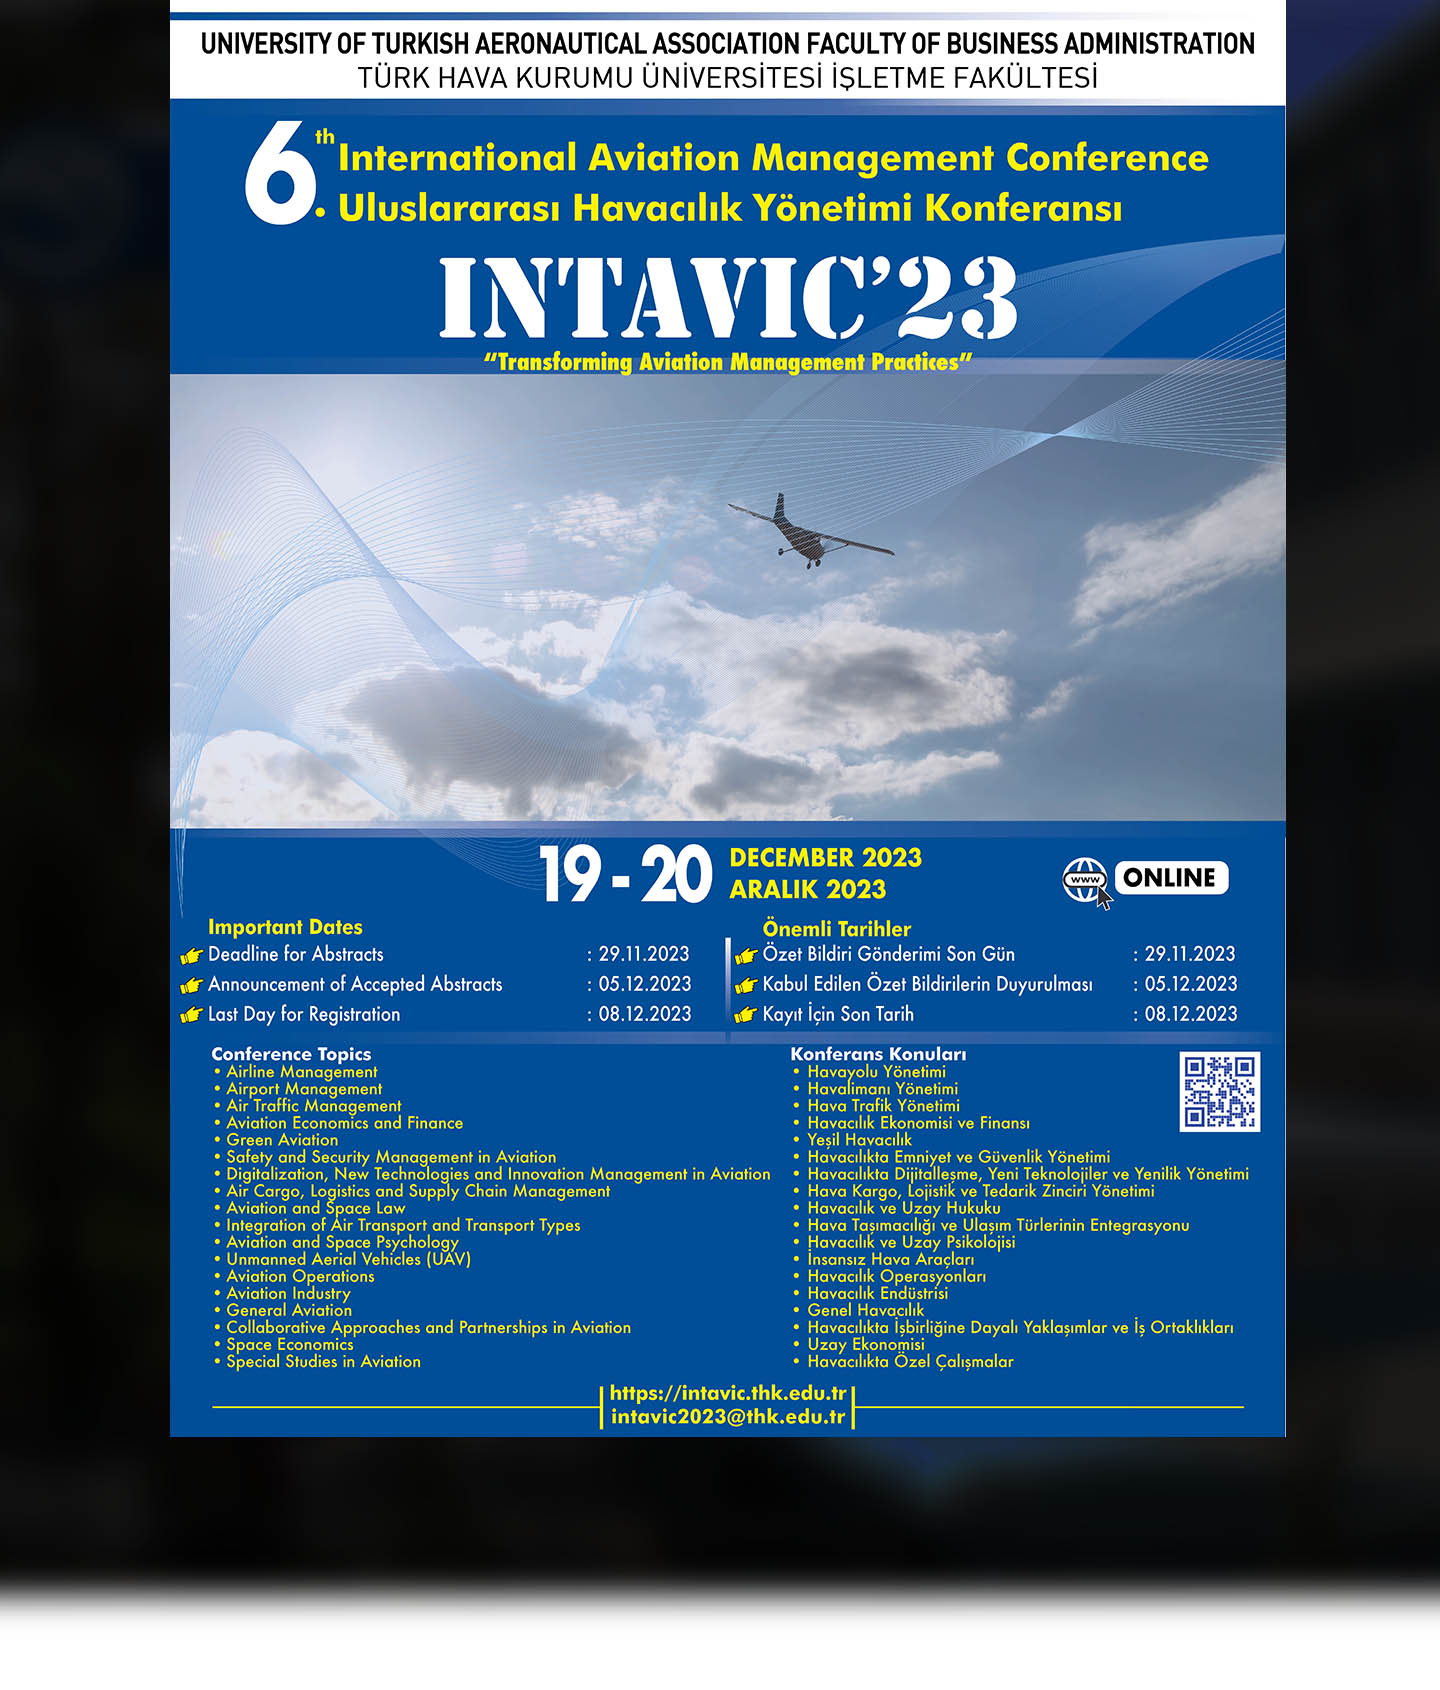 Uluslararası Havacılık Yönetimi Konferansı (INTAVIC)